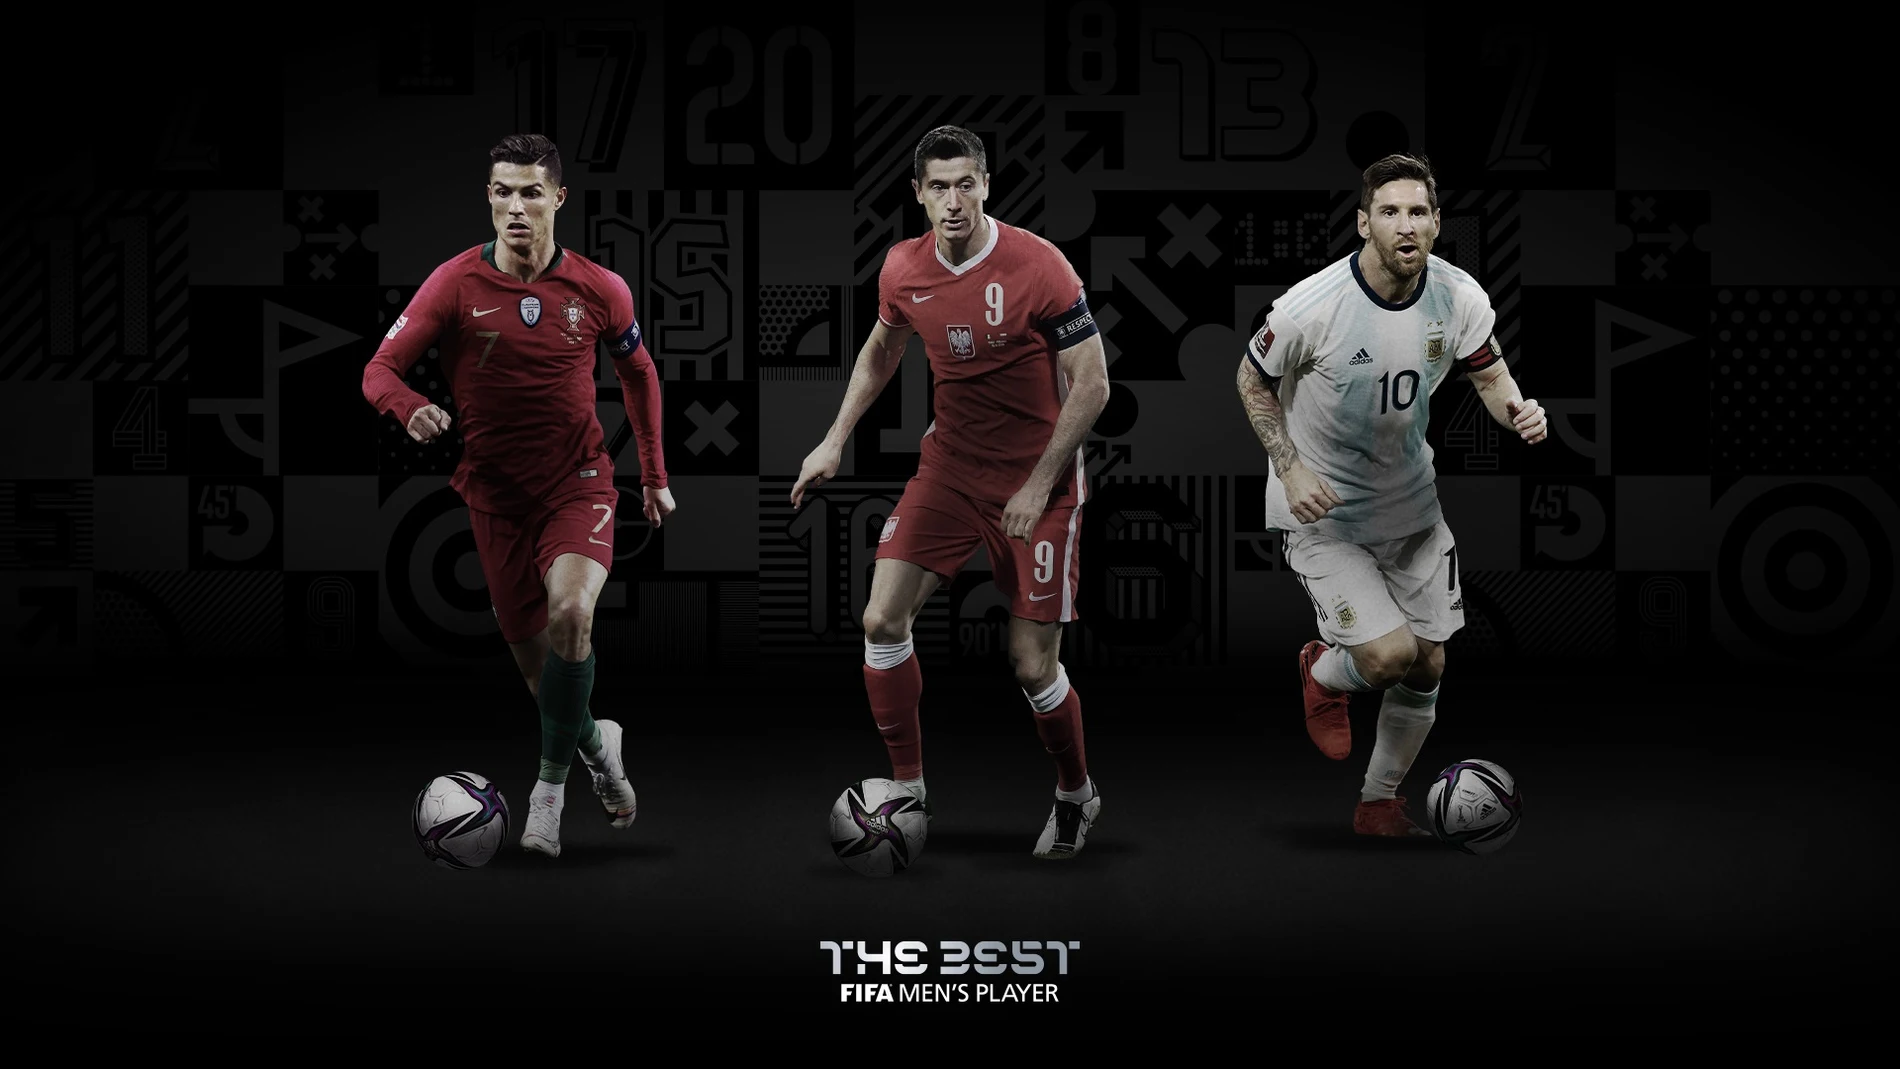 Cristiano, Lewandowski y Messi son los finalistas al premio "The Best"